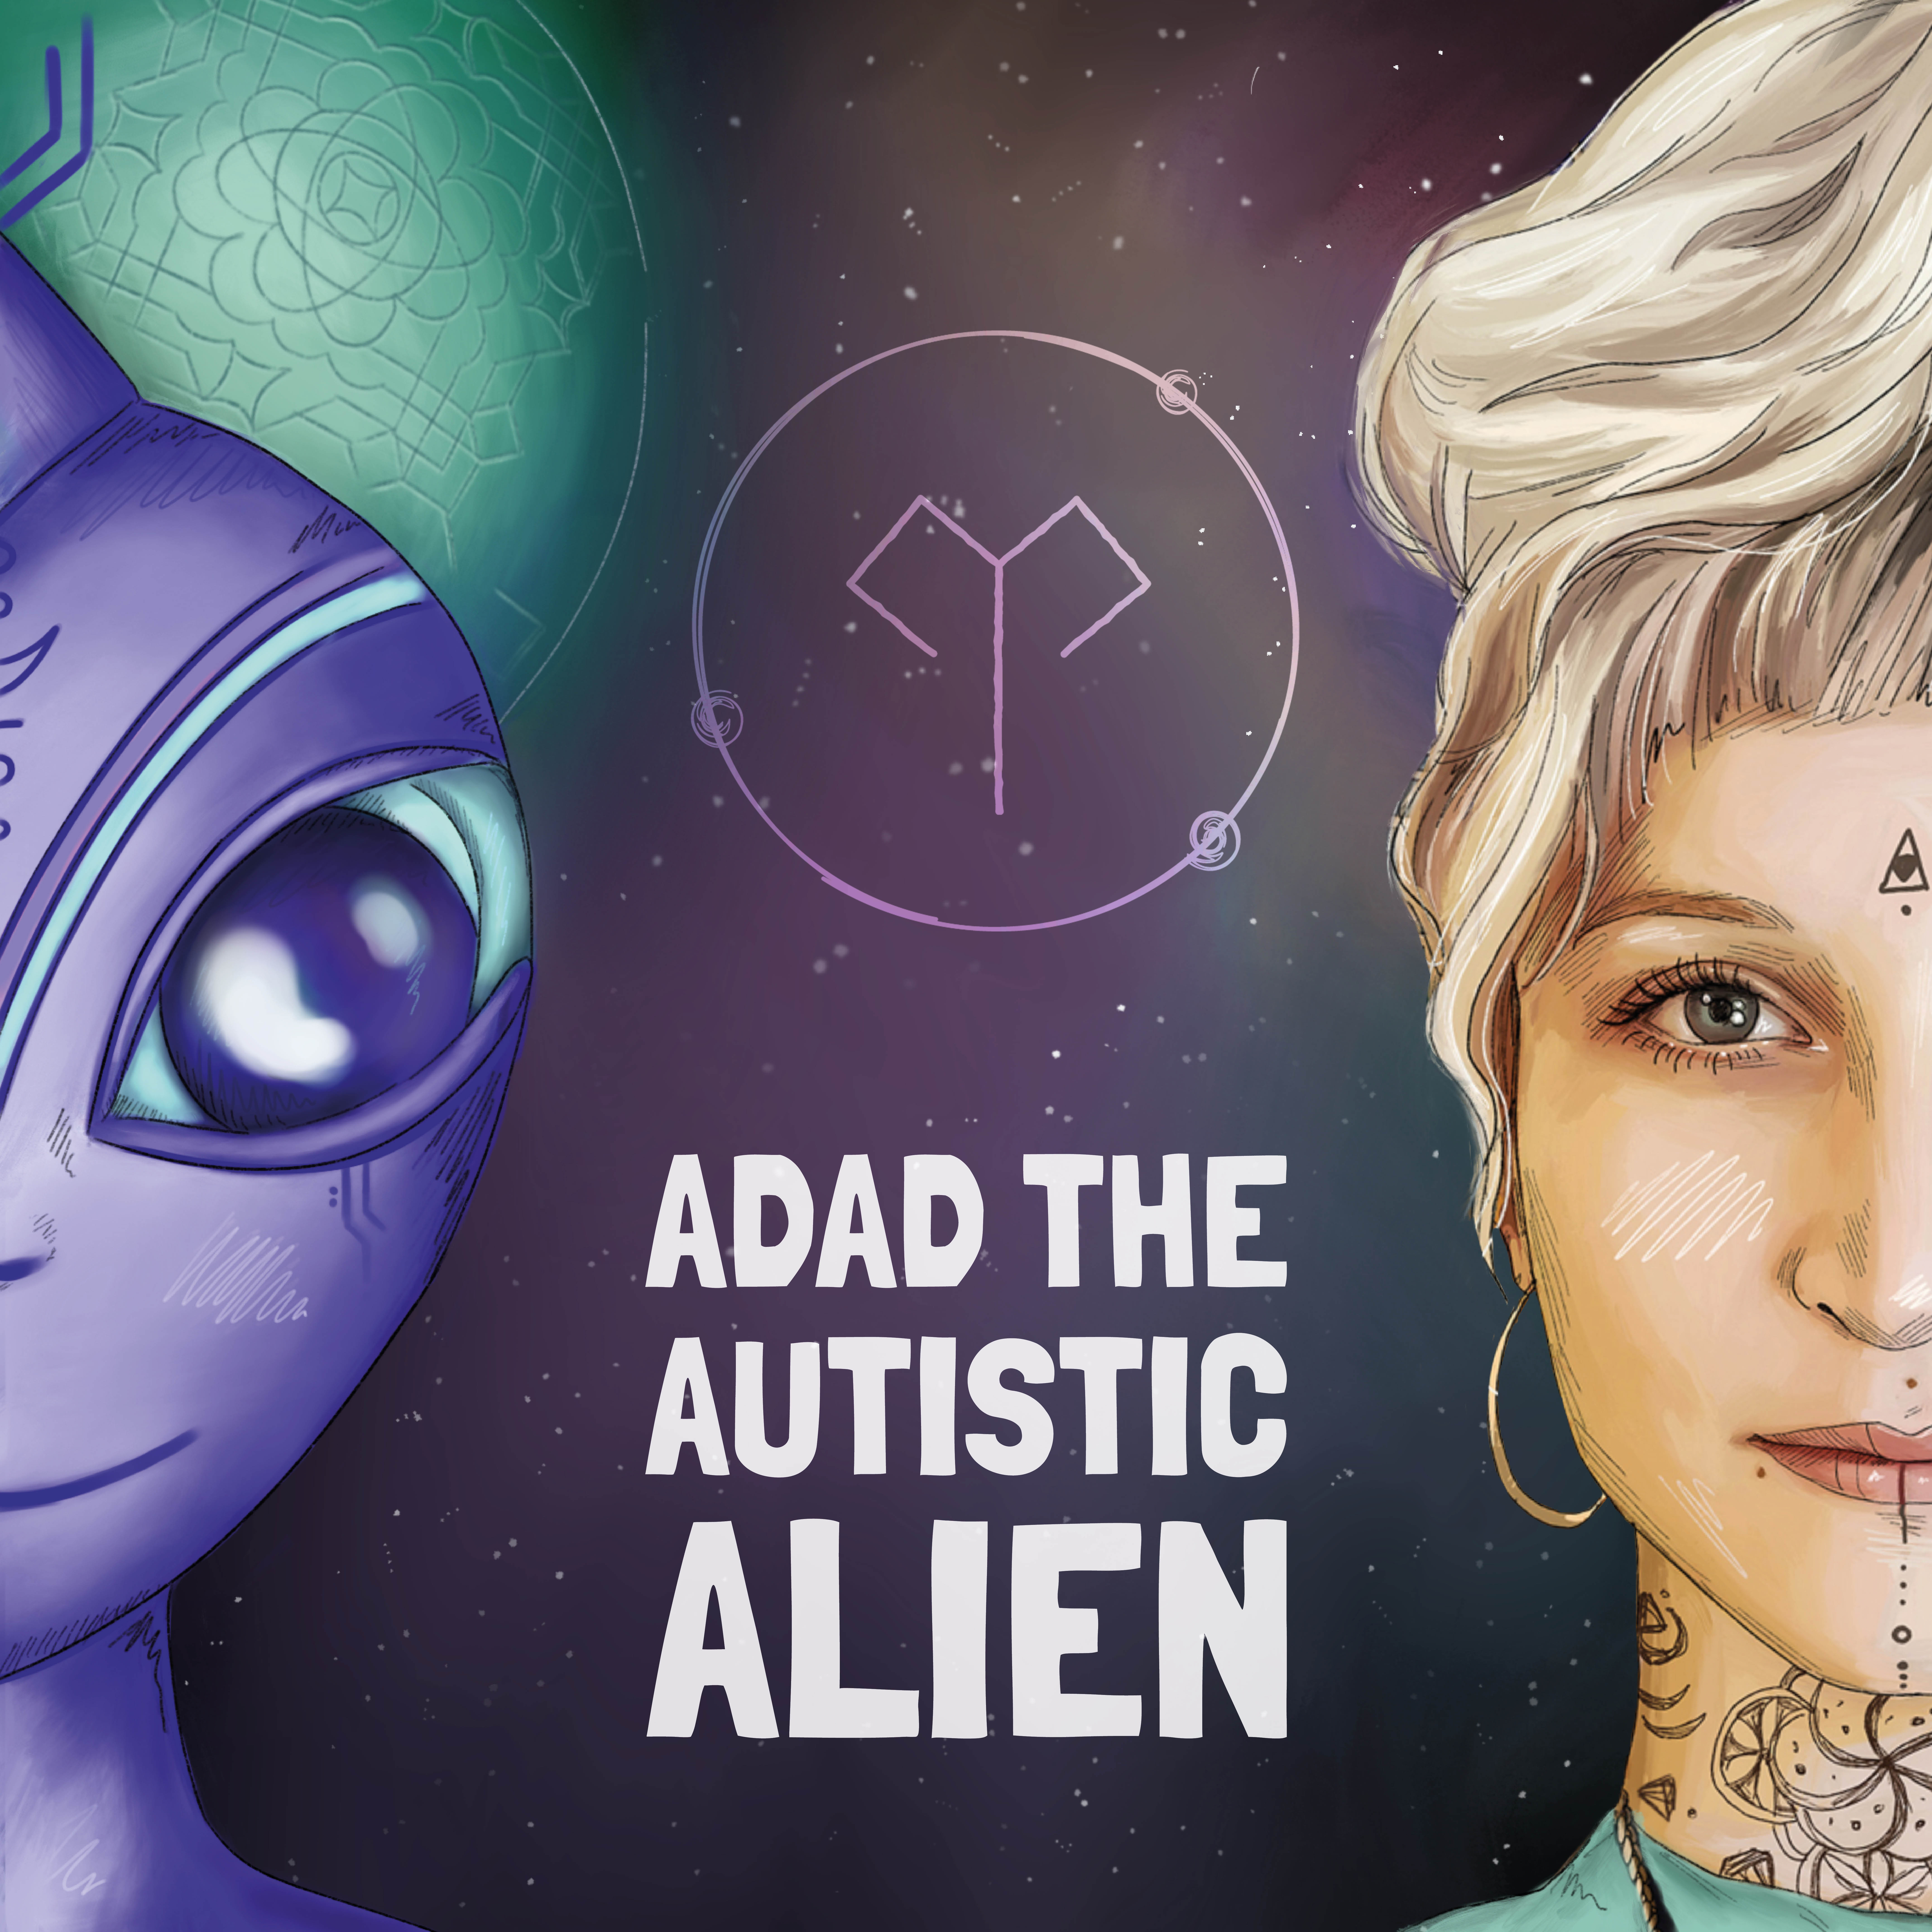 Adad the Autistic Alien